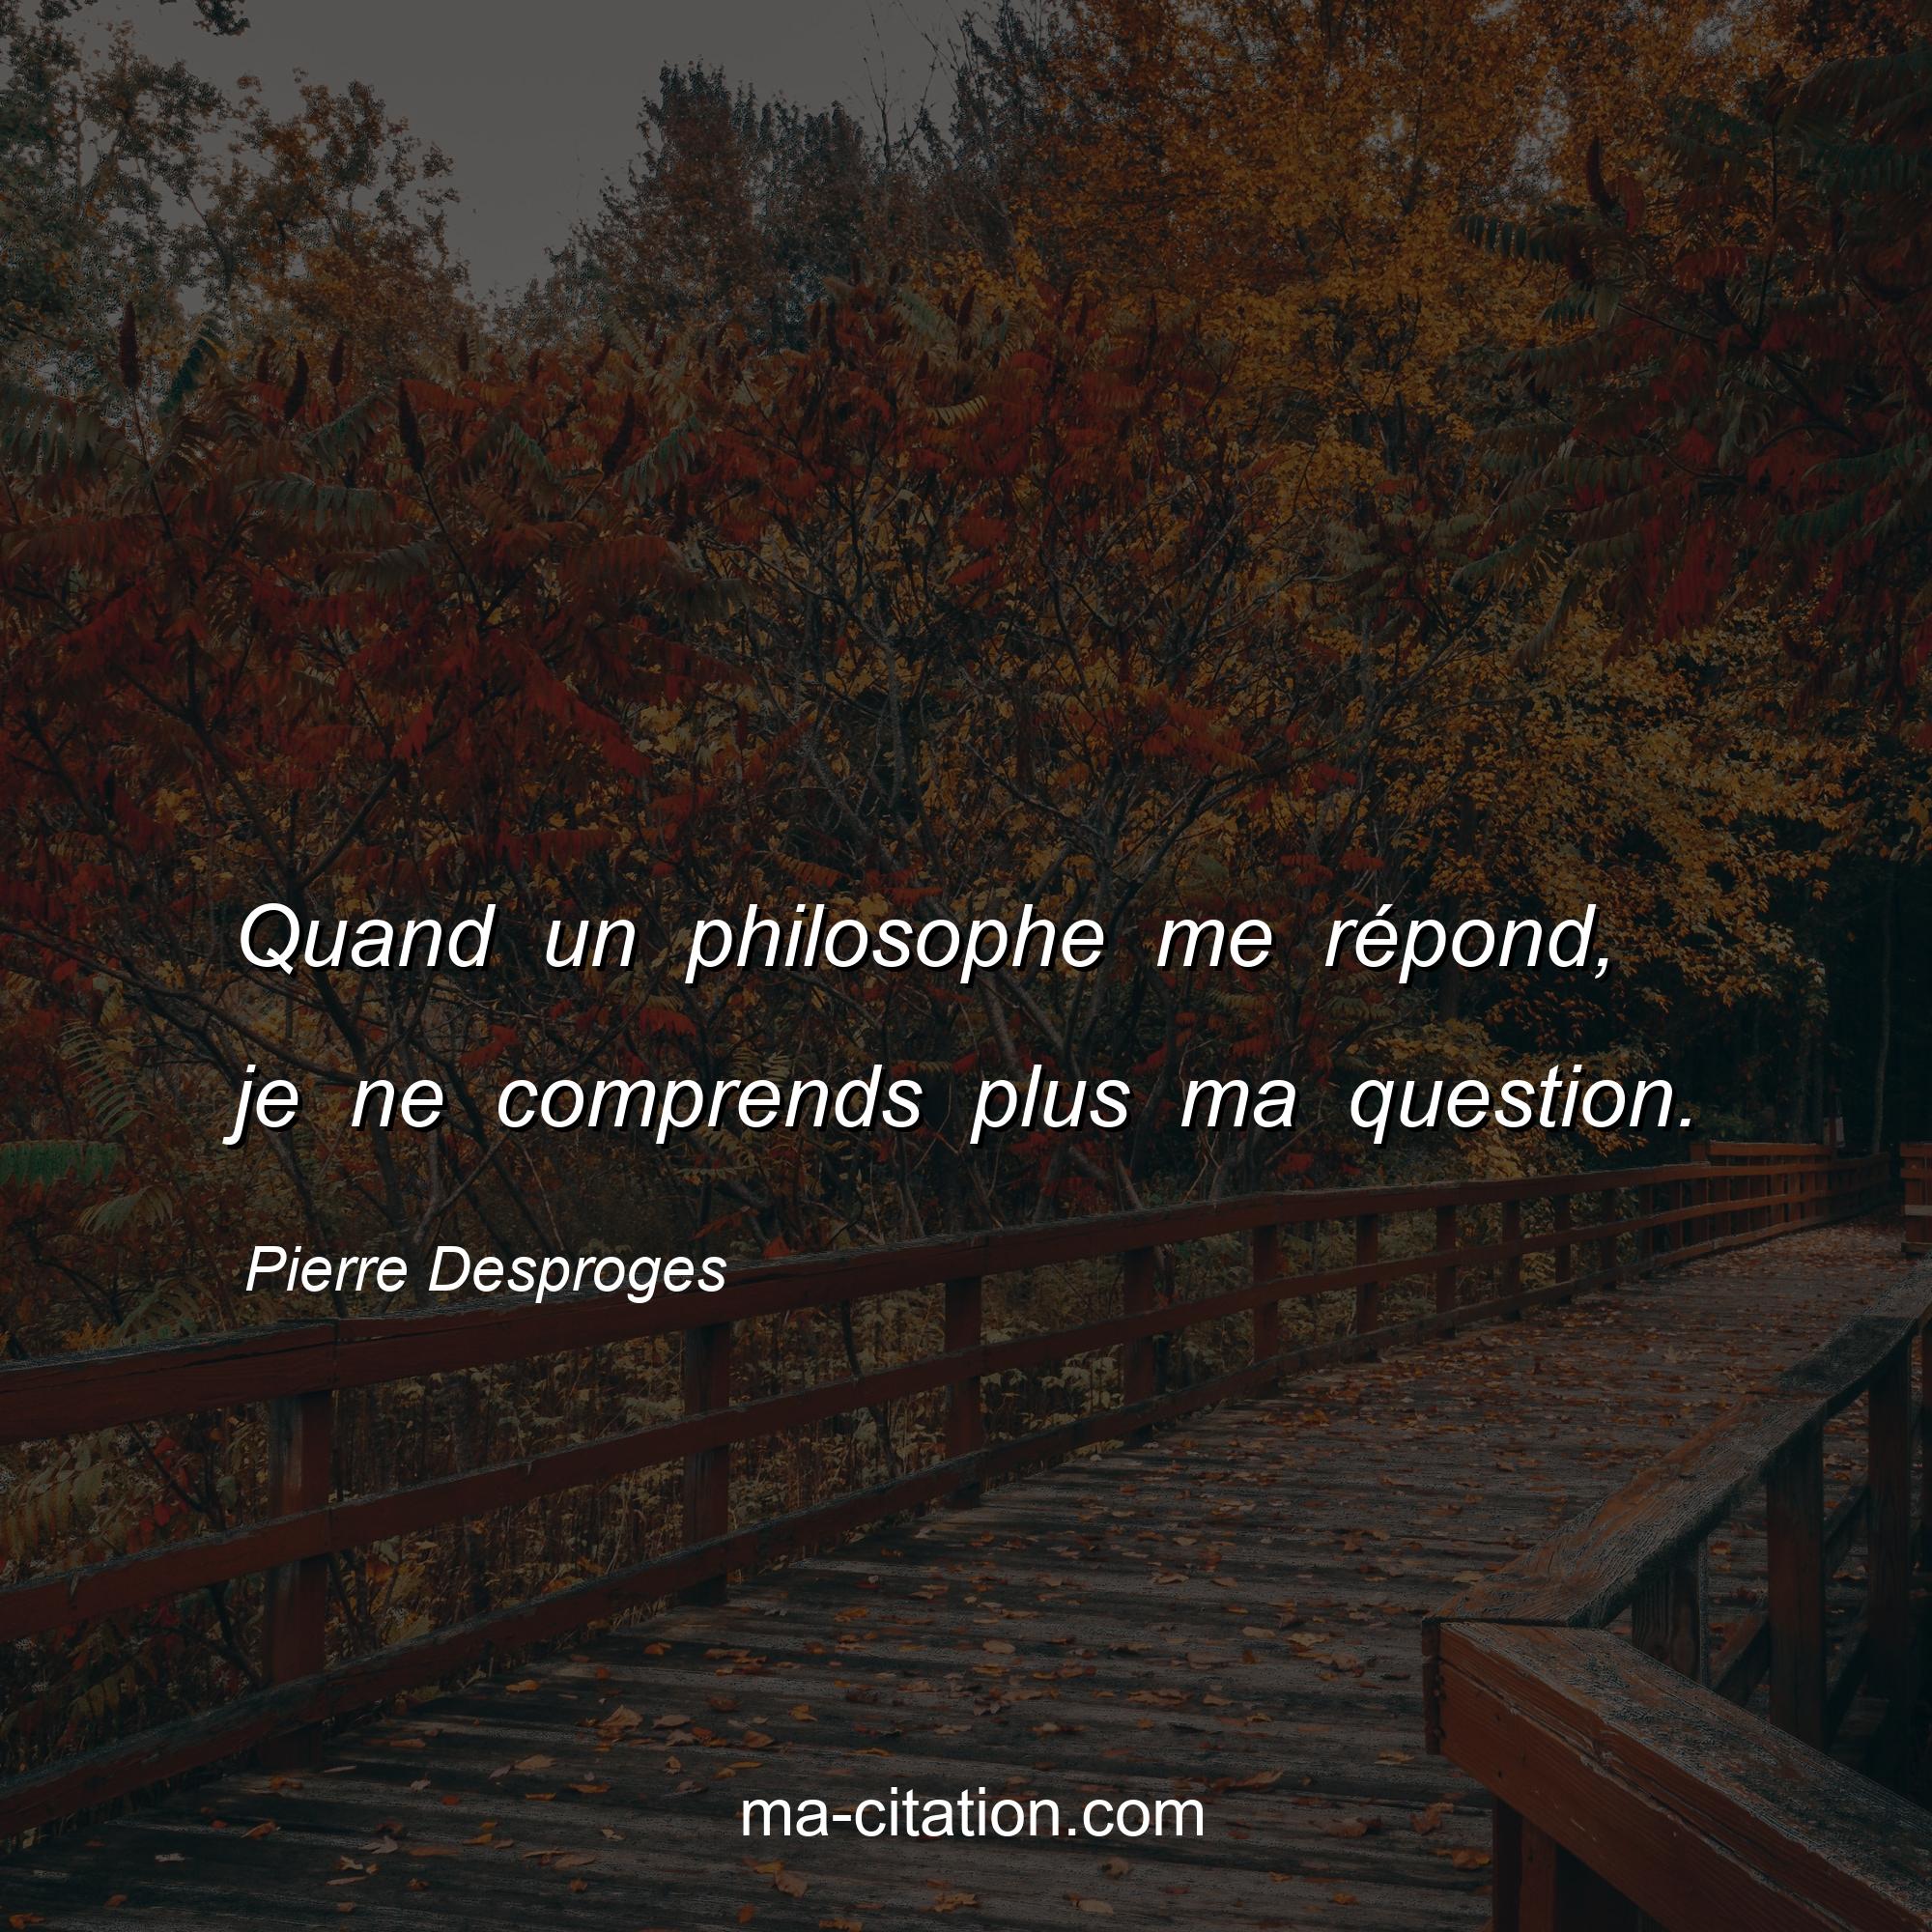 Pierre Desproges : Quand un philosophe me répond, je ne comprends plus ma question.